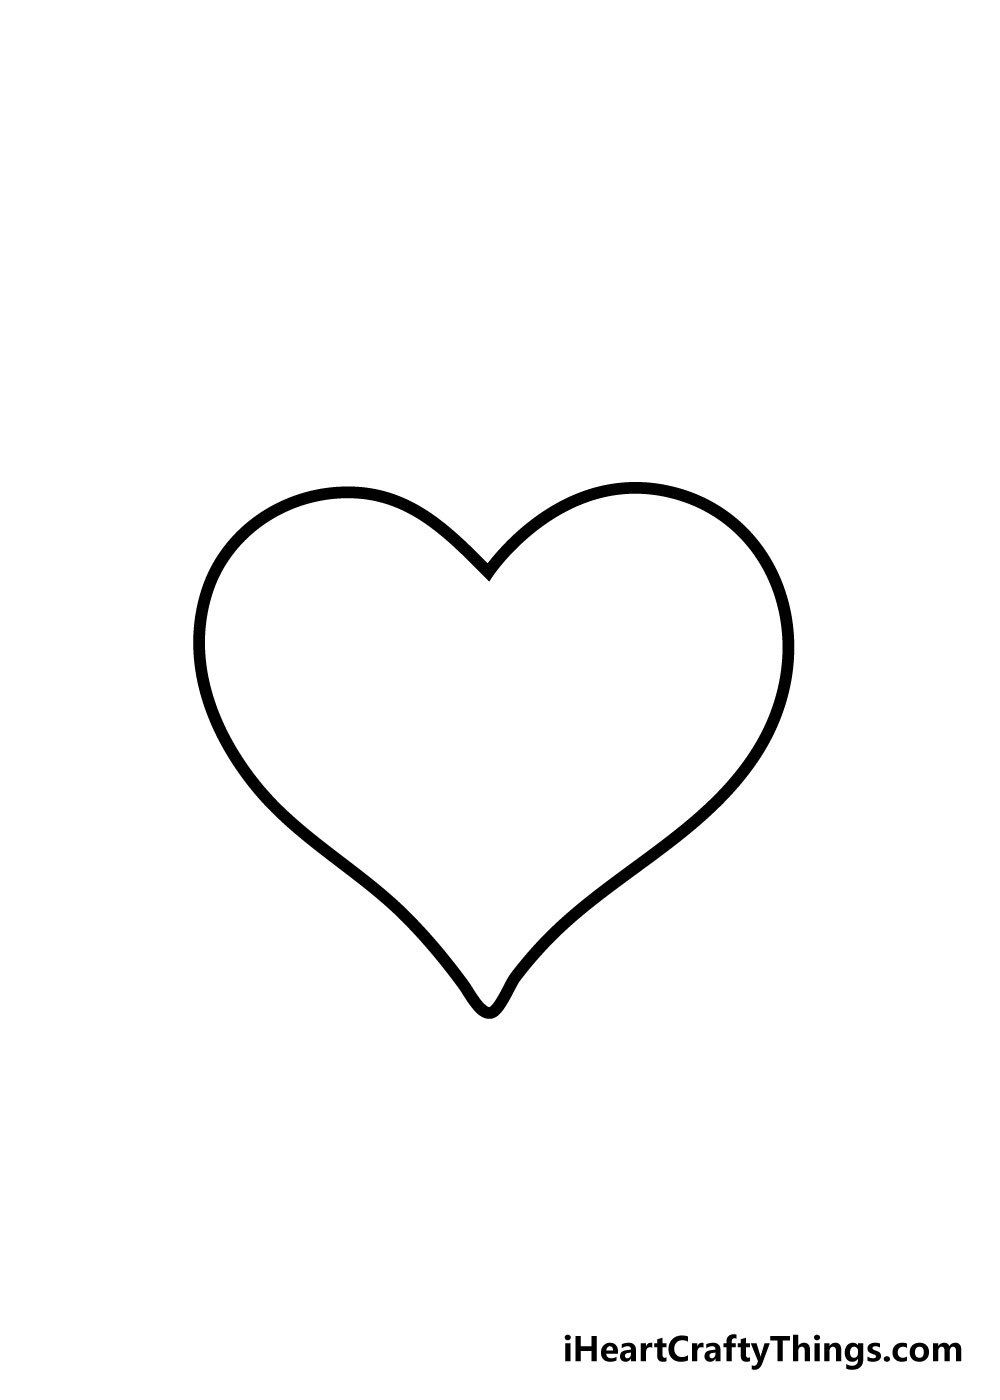 How to draw Heart 5 - Hướng dẫn chi tiết cách vẽ trái tim đơn giảm gồm 7 bước cơ bản